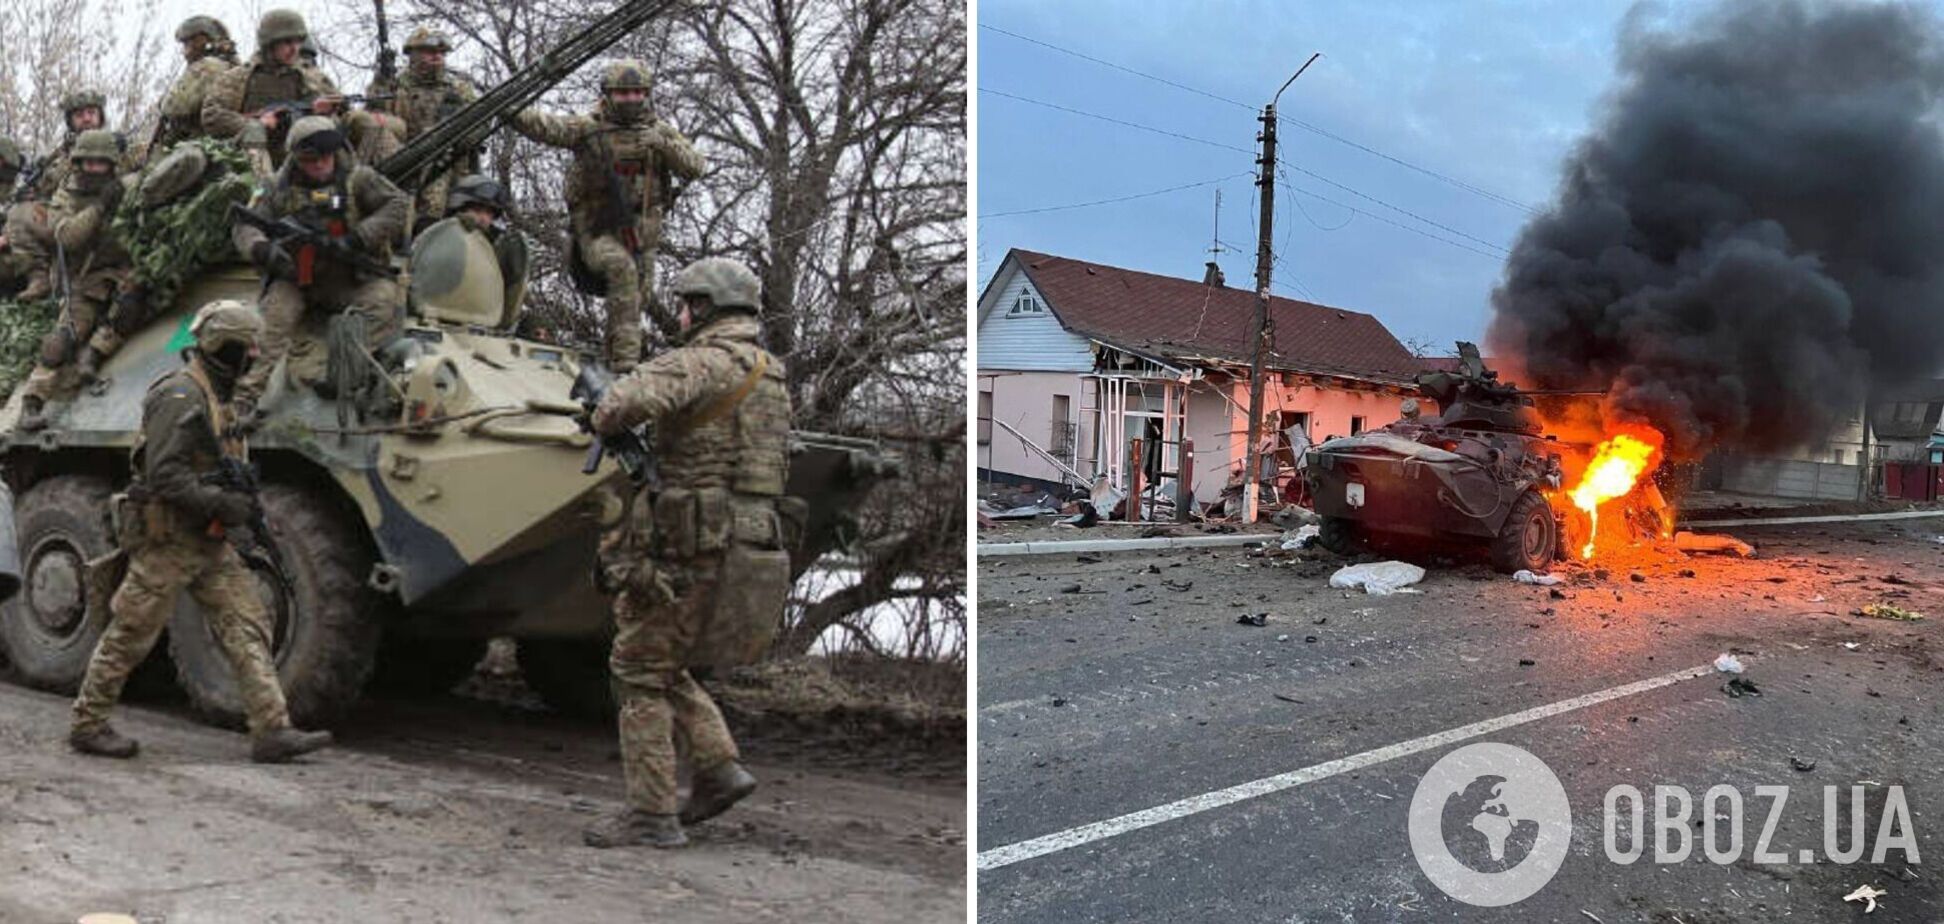 'Потихоньку идем на верную гибель': оккупант рассказал о потерях РФ в войне против Украины и назвал себя 'сломленным'. Видео